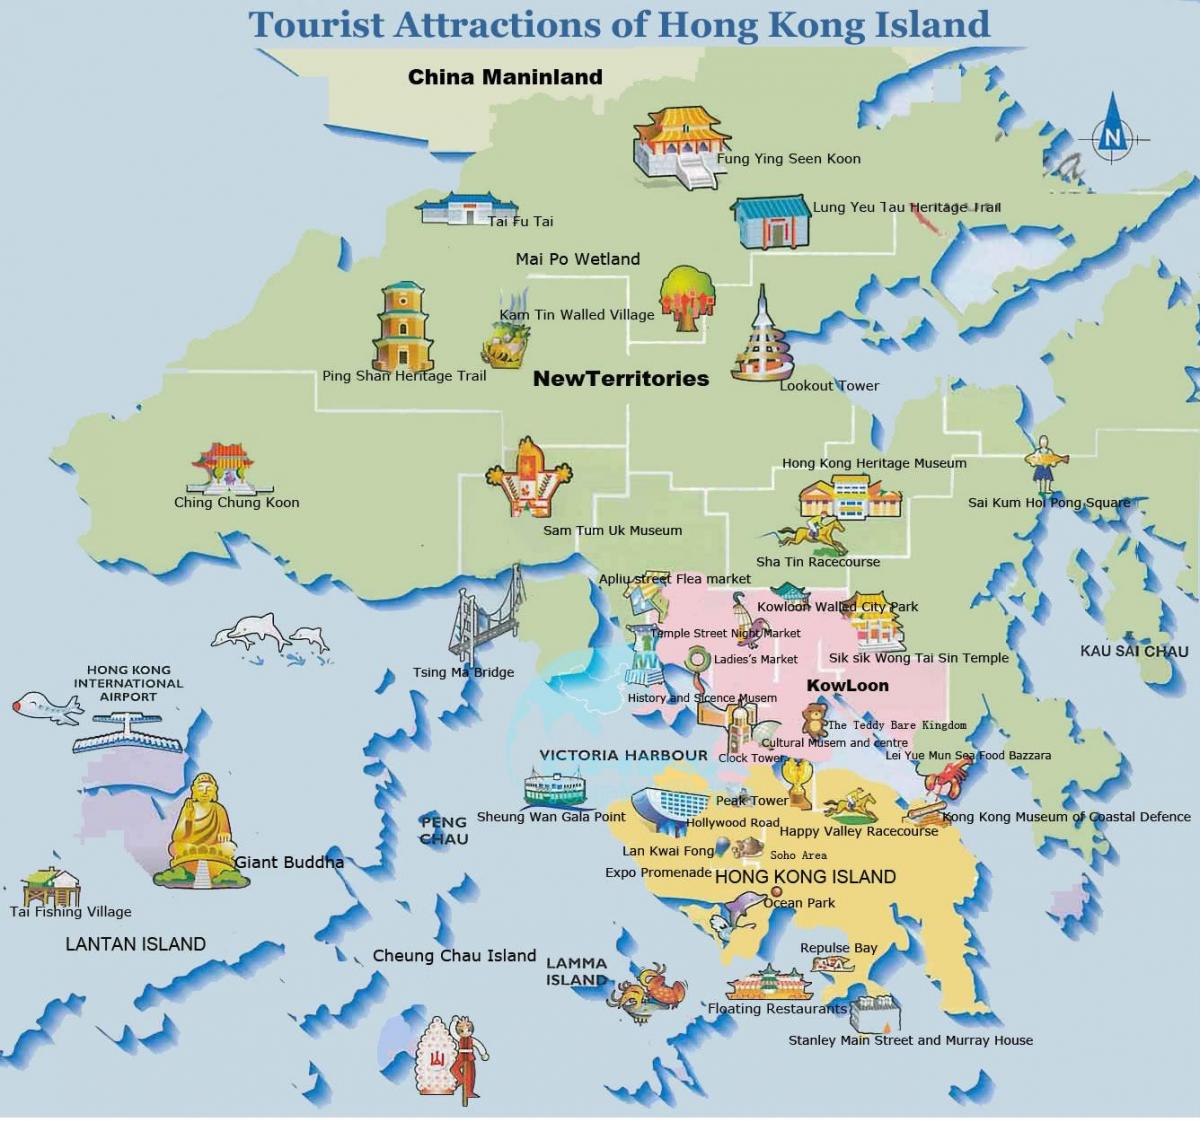 пике картата Хонг конг